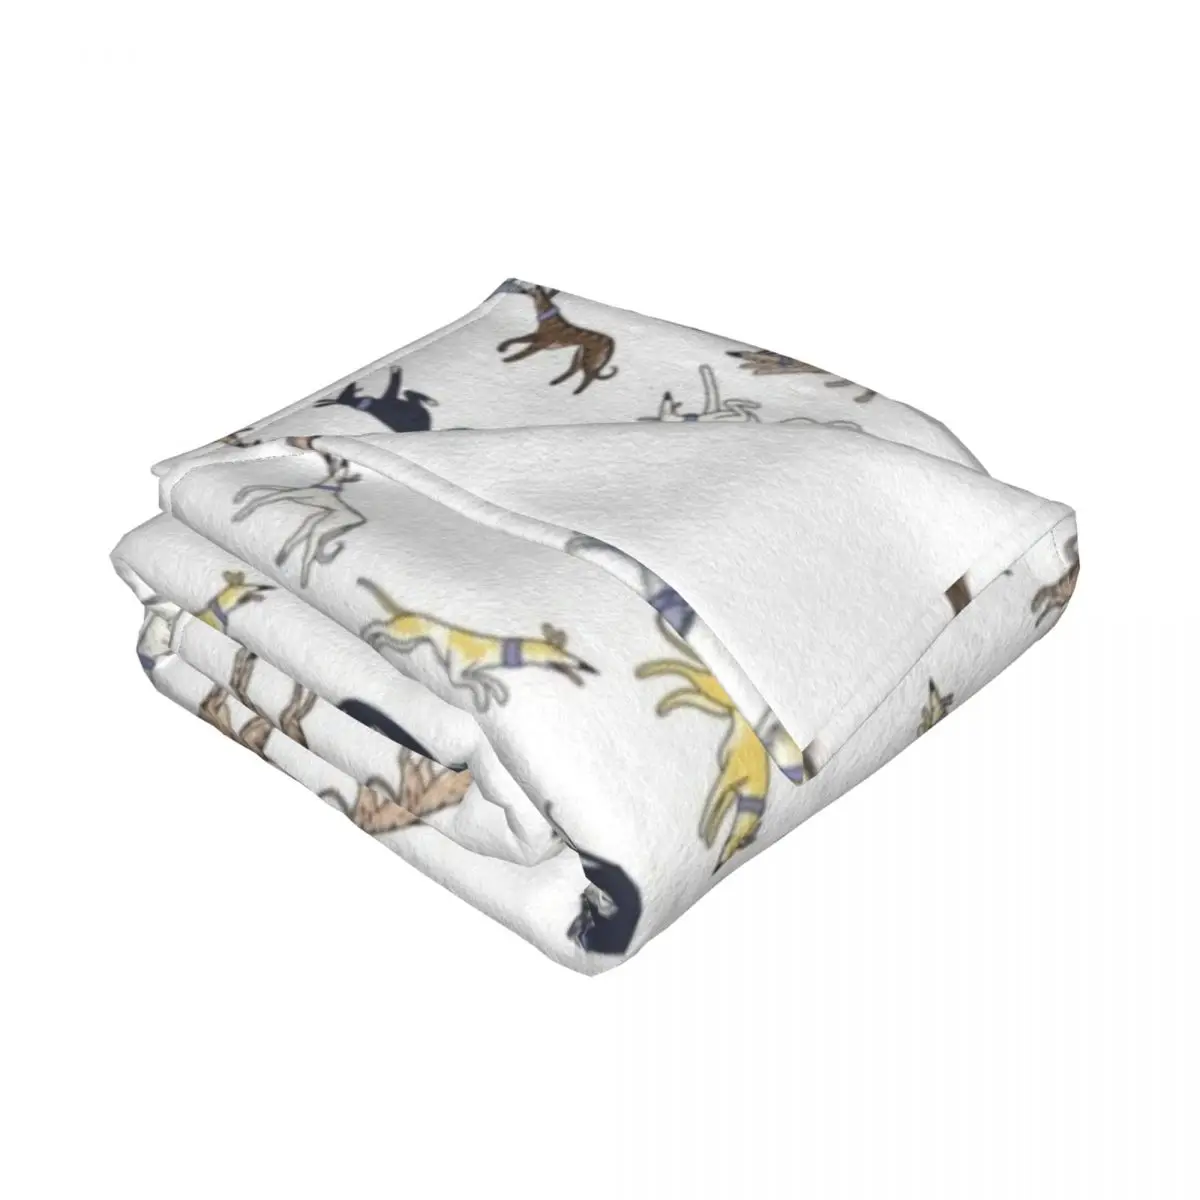 Picos e Cães Branco Lance Cobertor para Cama, Cobertores Decorativos, Cobertores Retro